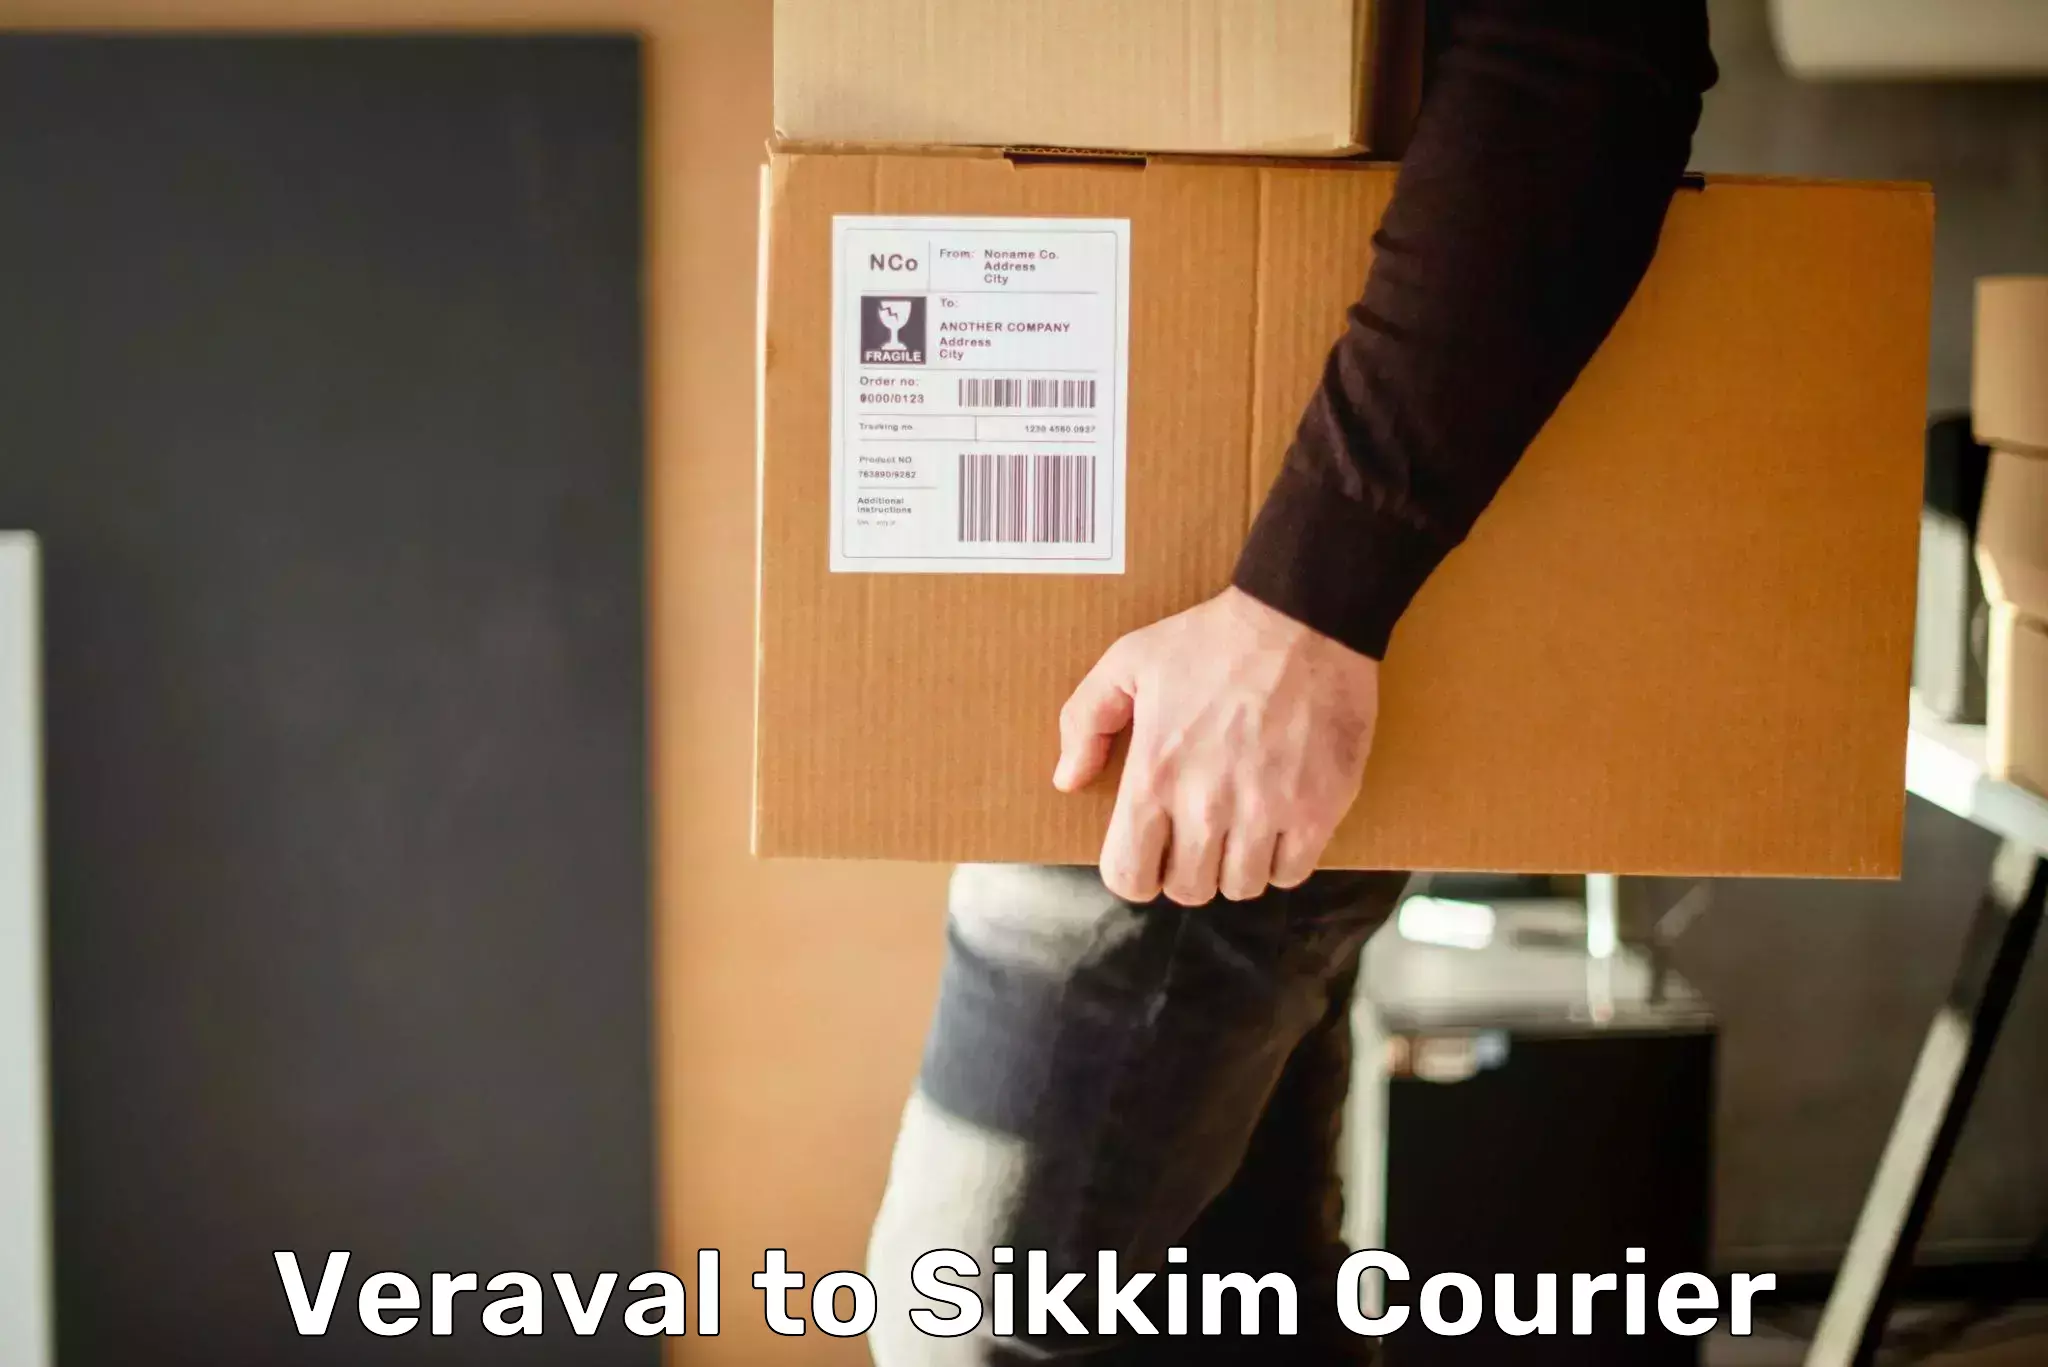 Doorstep delivery service Veraval to Geyzing